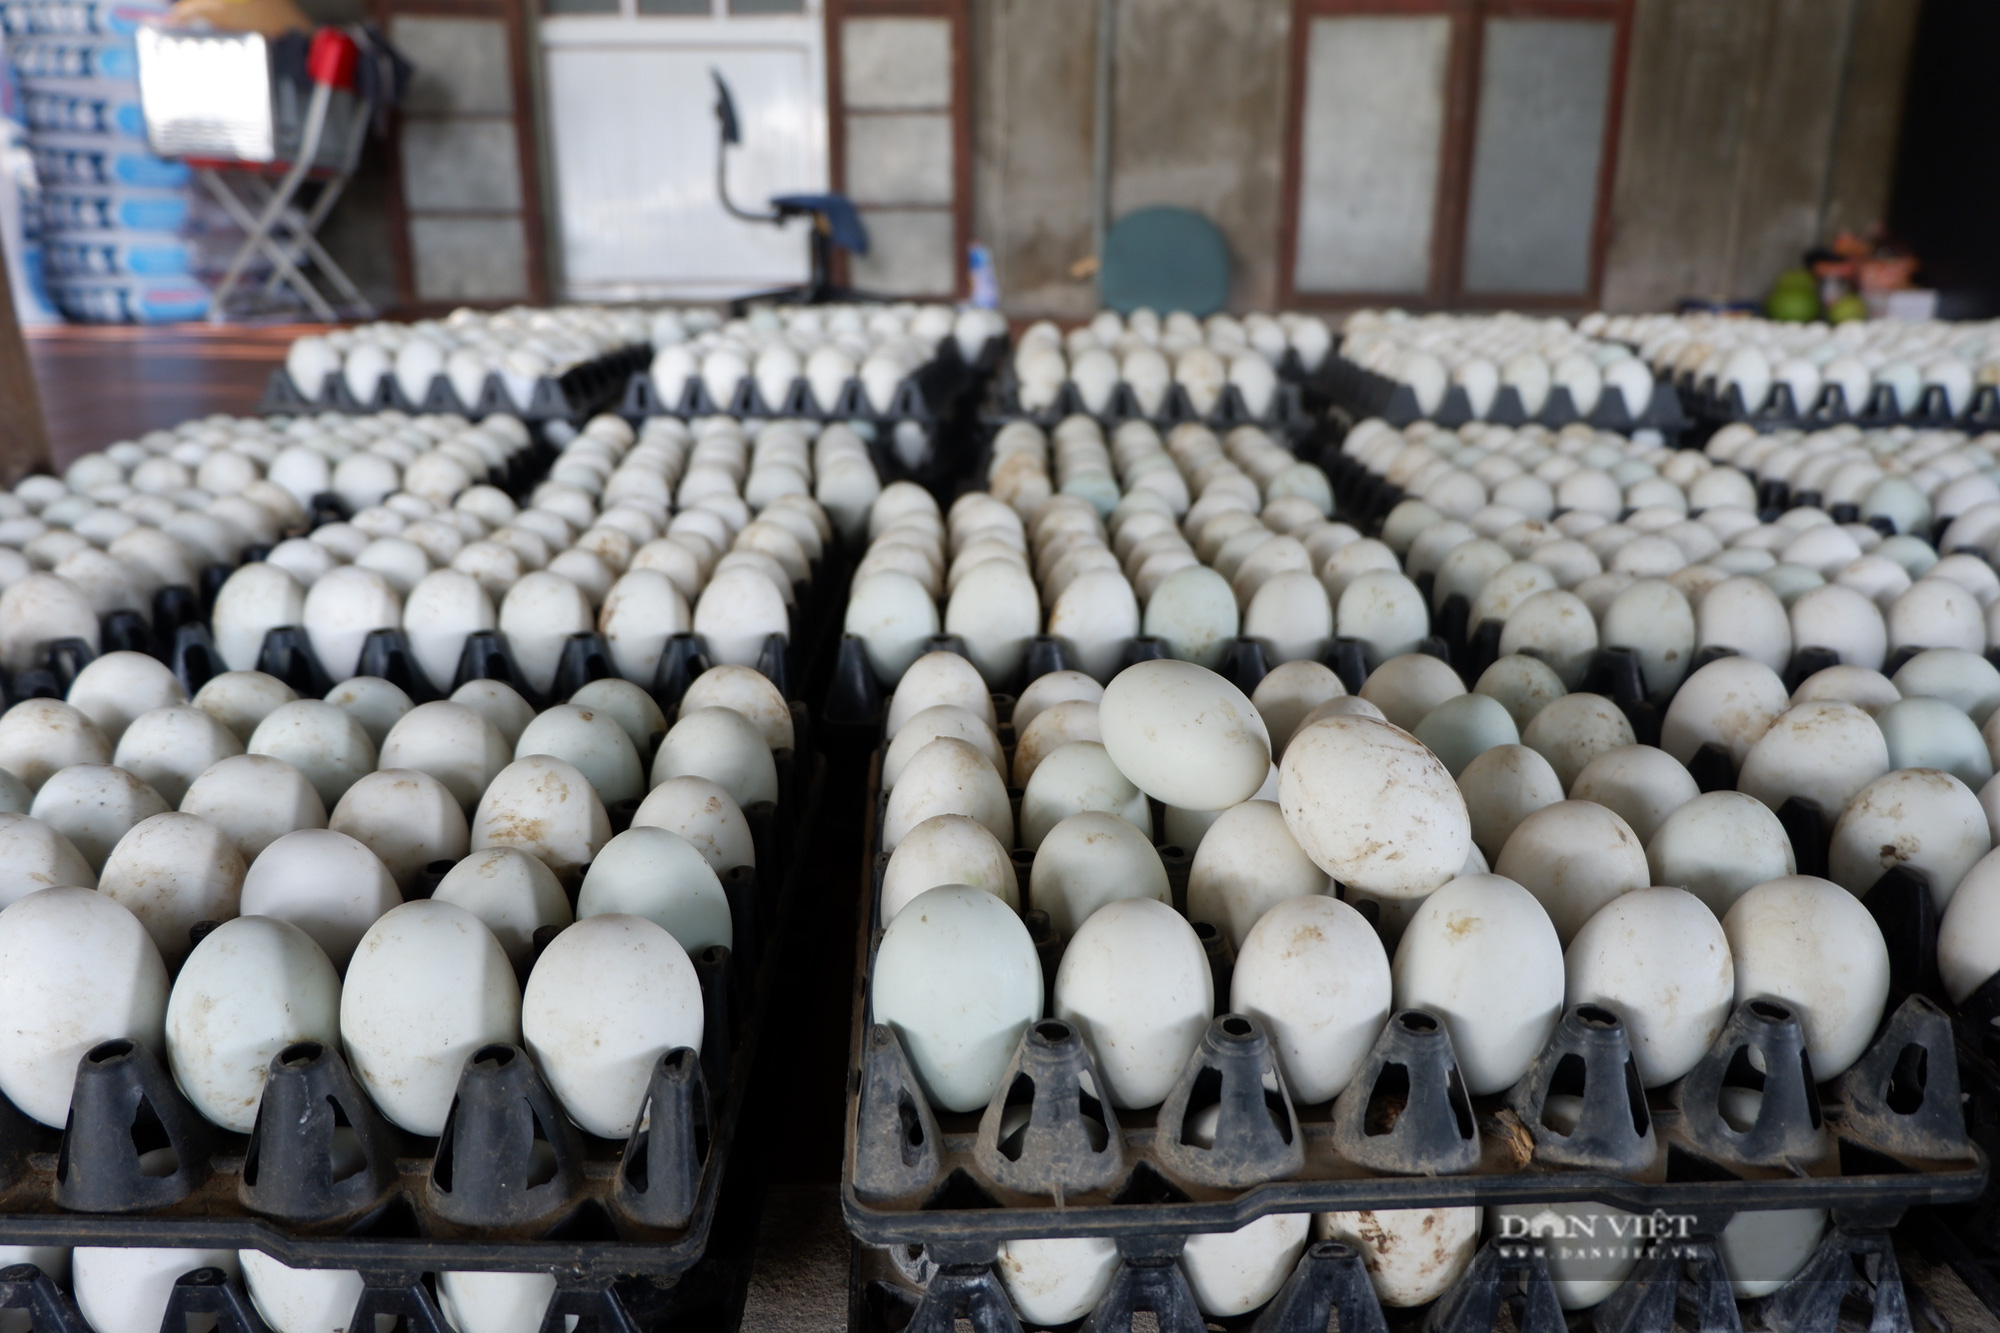 Hà Nội: Trang trại rộng 10ha nuôi vịt, cá cho 4 triệu quả trứng, 100 tấn cá, một nông dân thu lãi 700 triệu/năm - Ảnh 7.